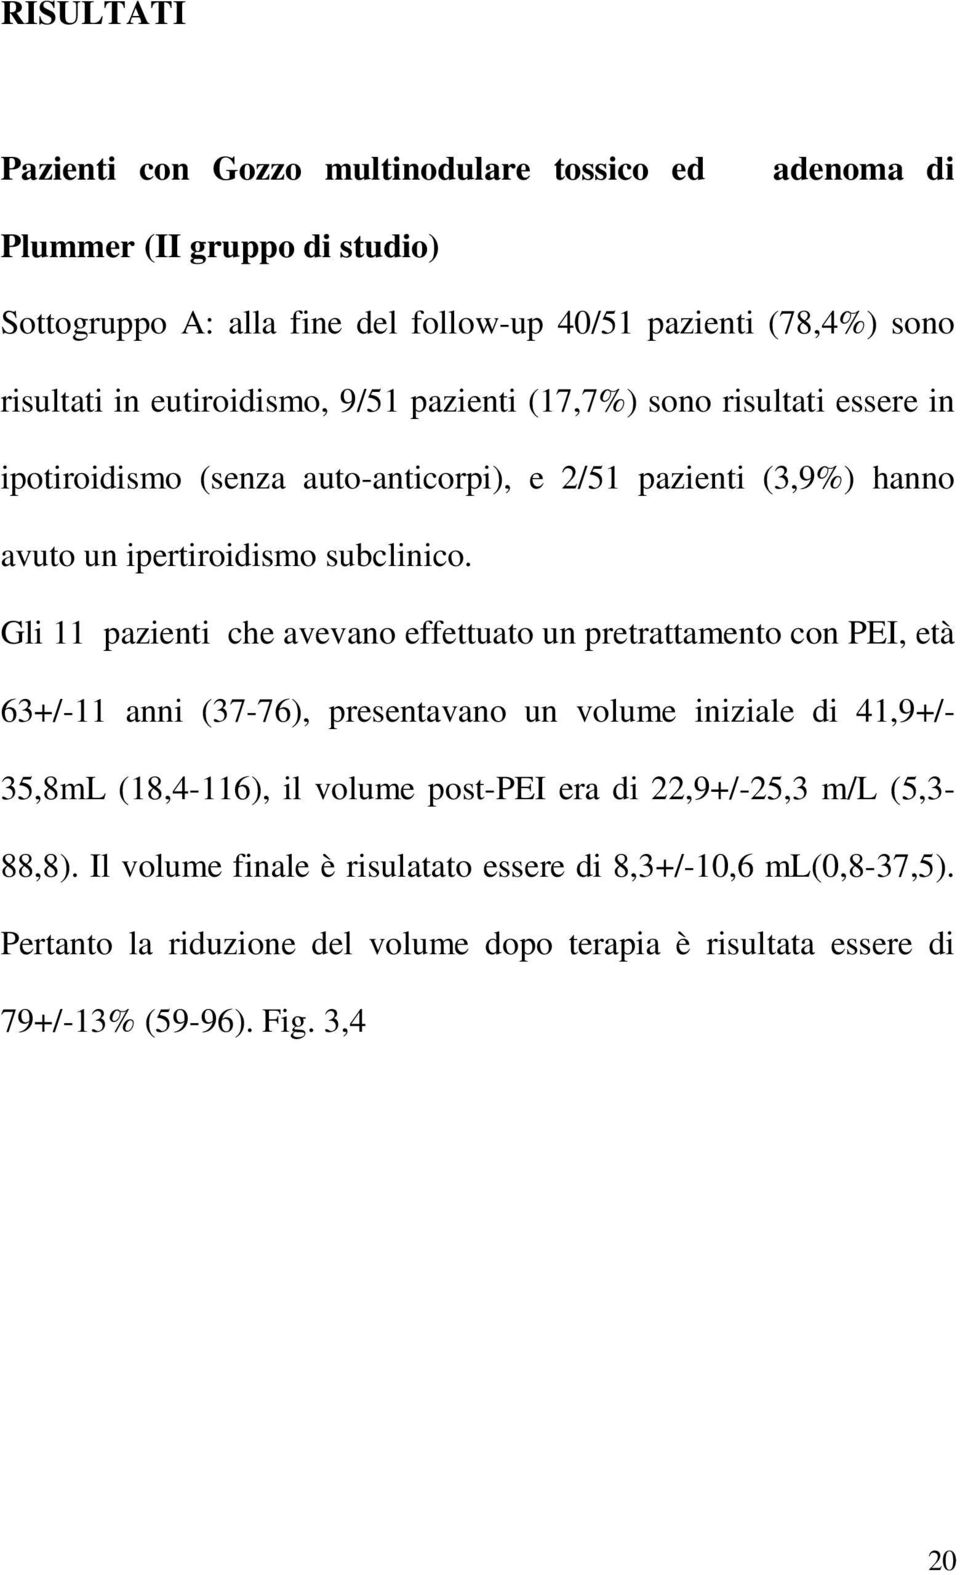 Gli 11 pazienti che avevano effettuato un pretrattamento con PEI, età 63+/-11 anni (37-76), presentavano un volume iniziale di 41,9+/- 35,8mL (18,4-116), il volume post-pei era